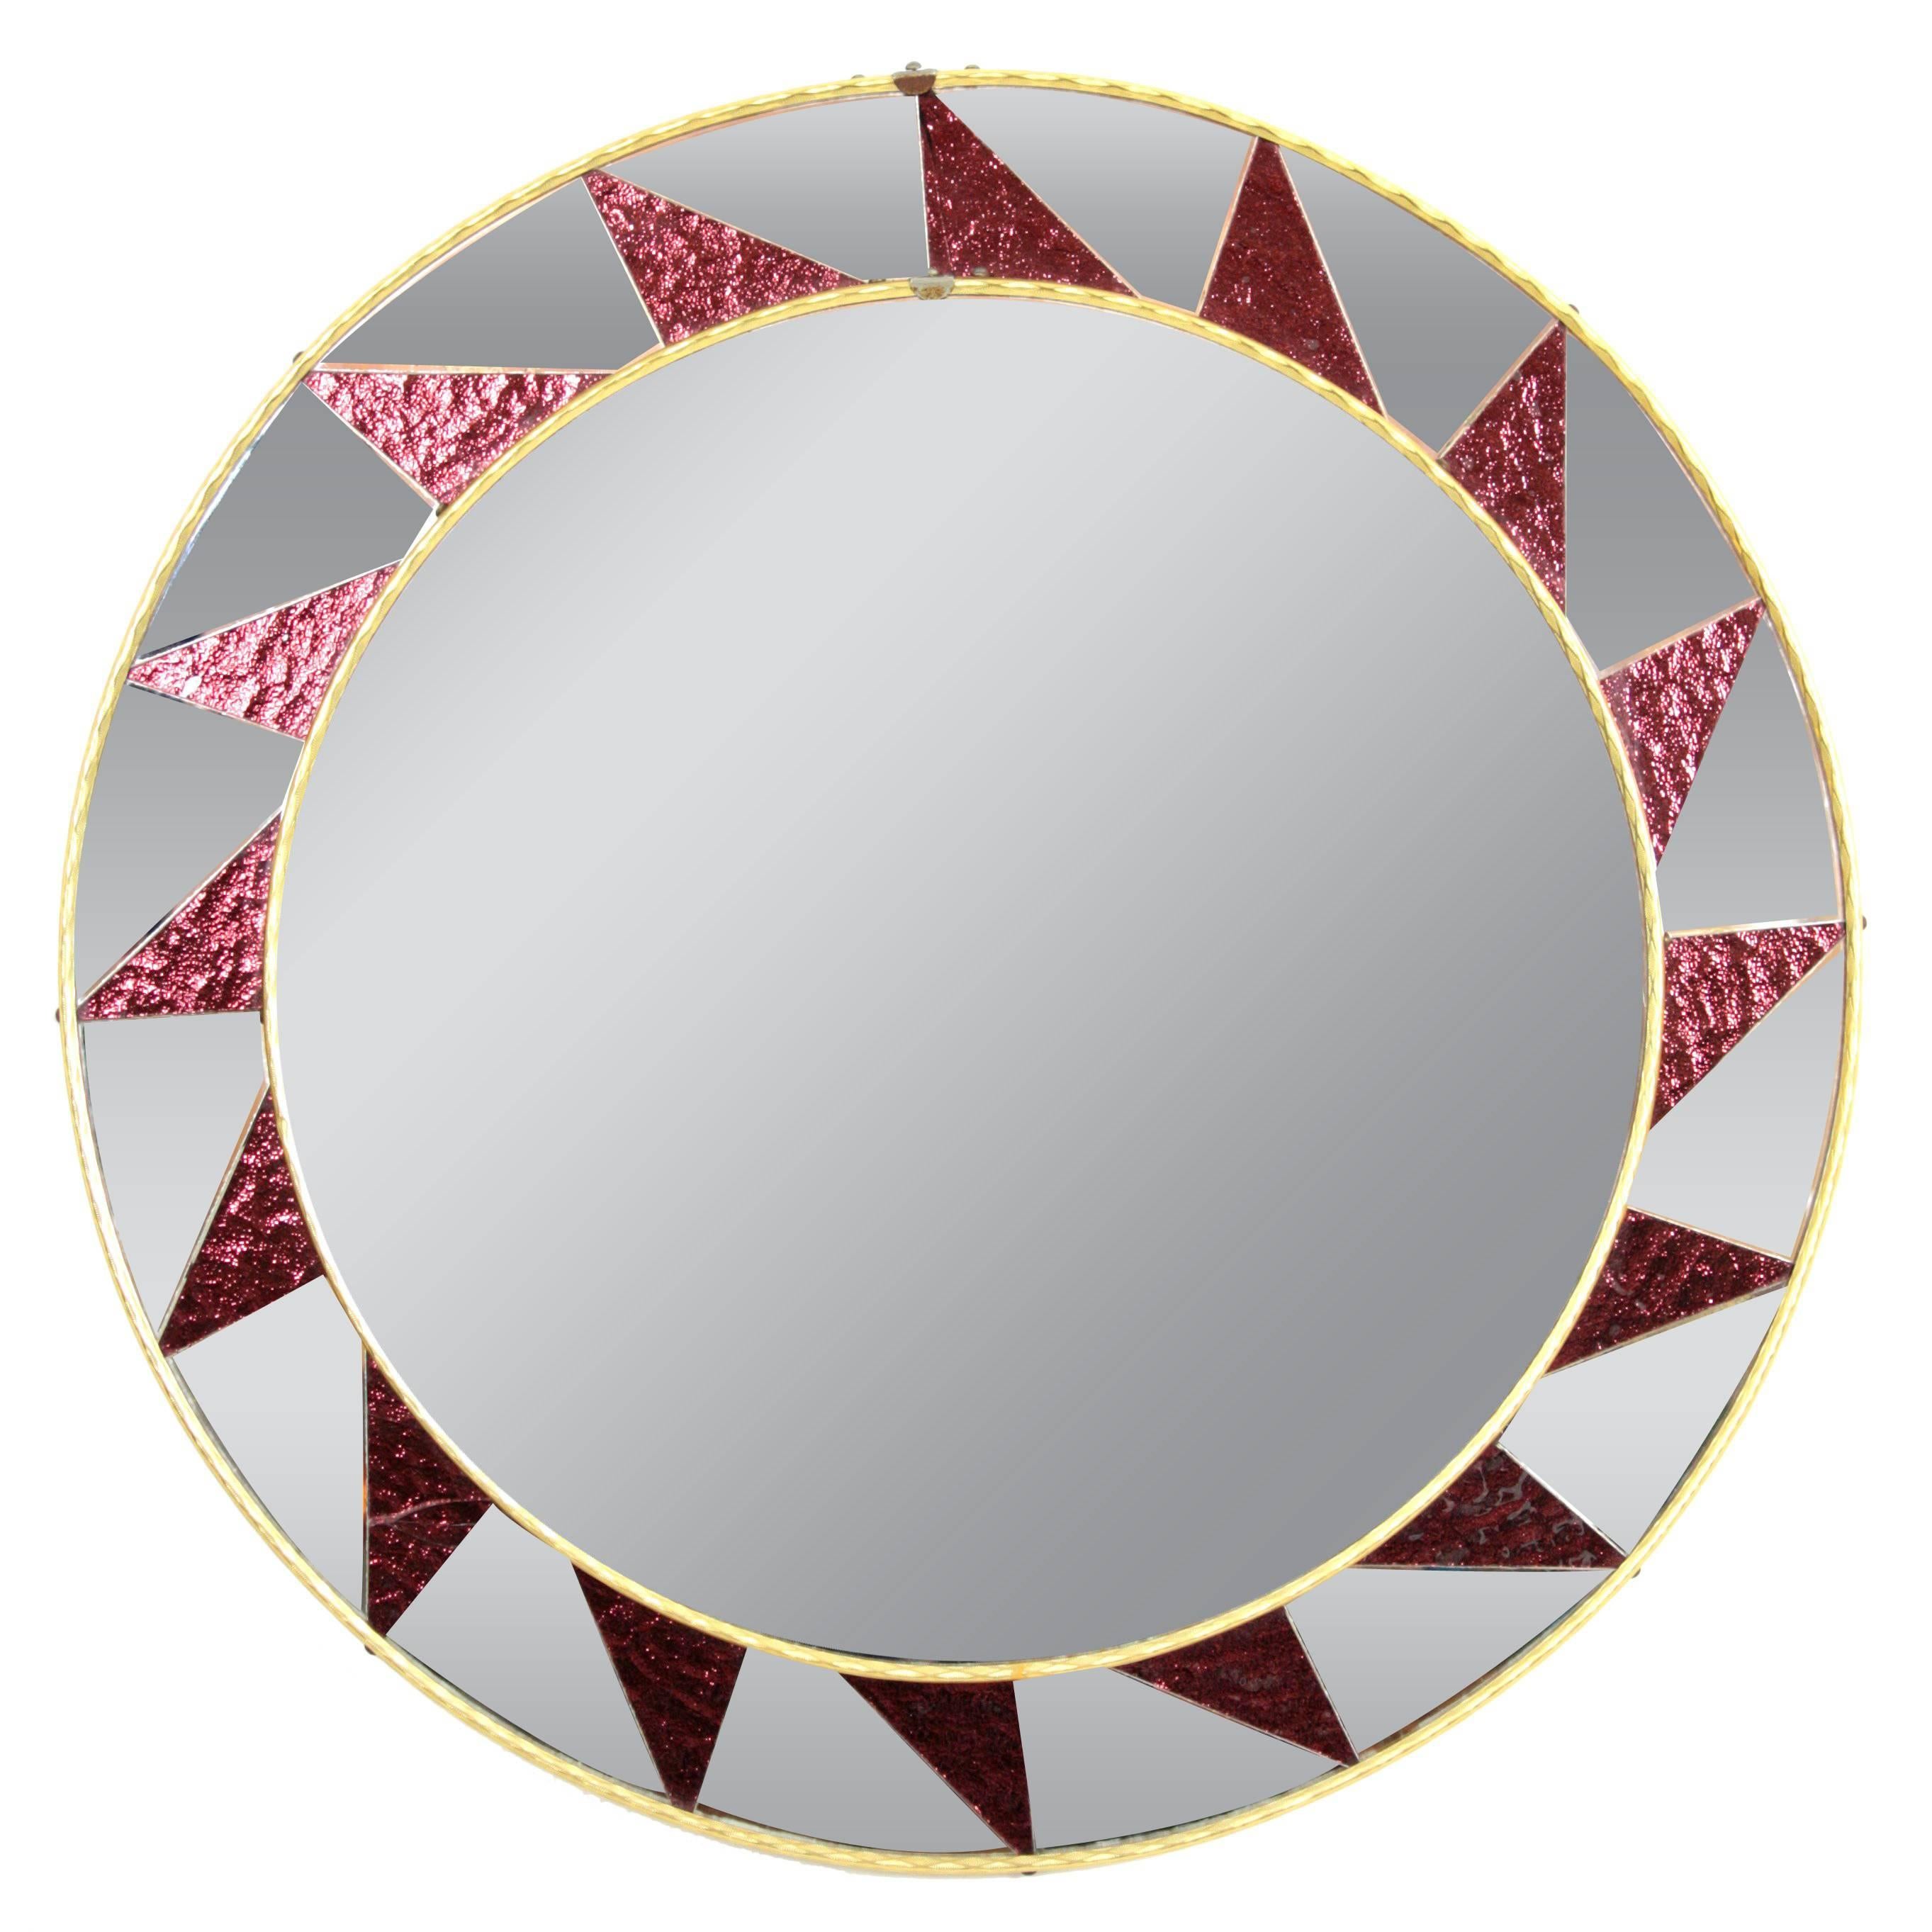 Runder Mosaik-Spiegel aus den 1960er Jahren, gerahmt mit einem Muster aus gerahmten Spiegelgläsern